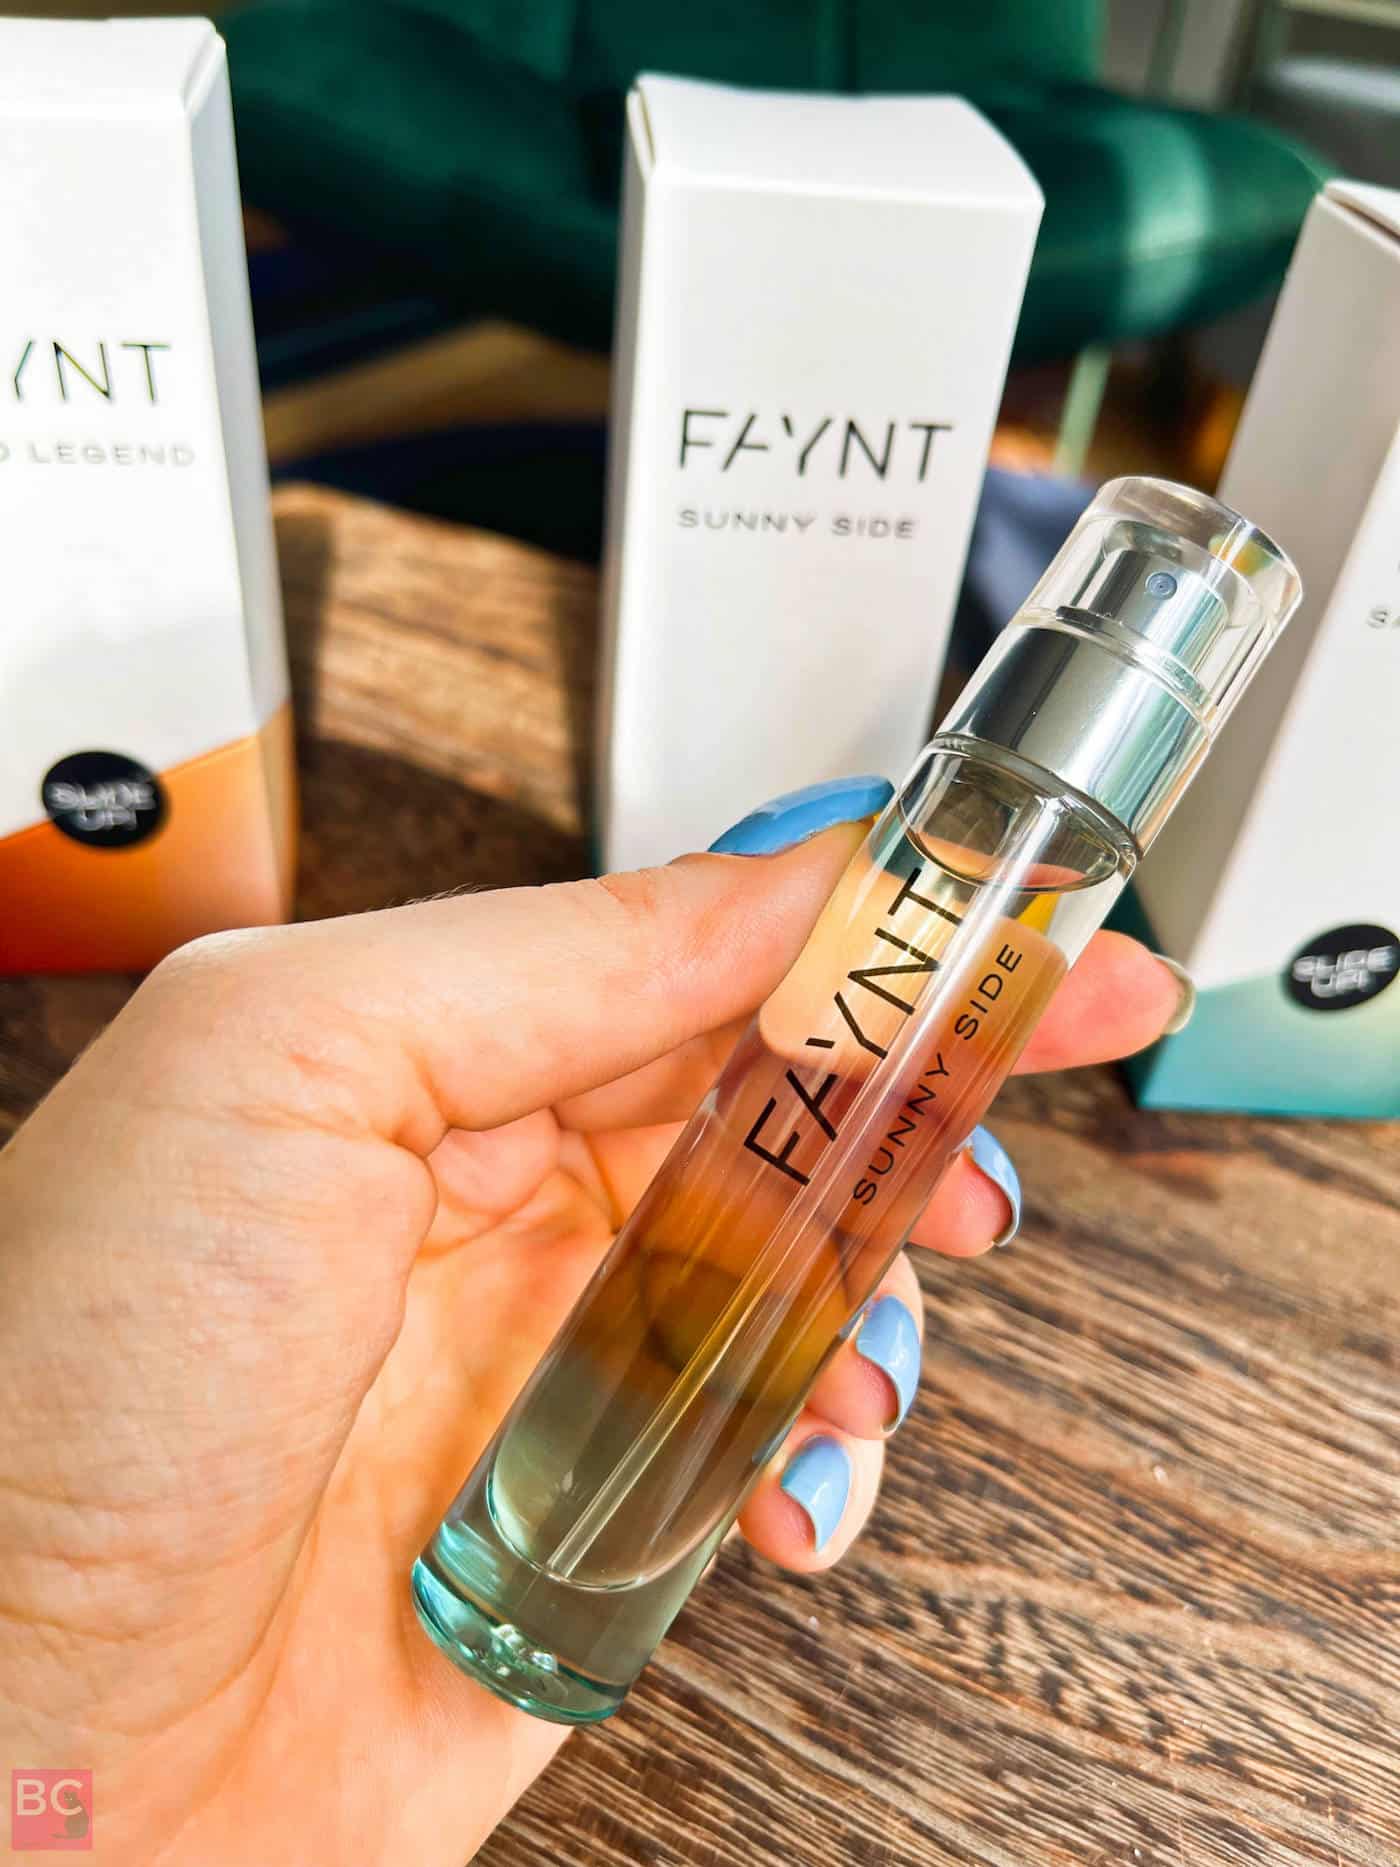 SUNNY SIDE FAYNT Erfahrungen Parfüm Duft Bewertung